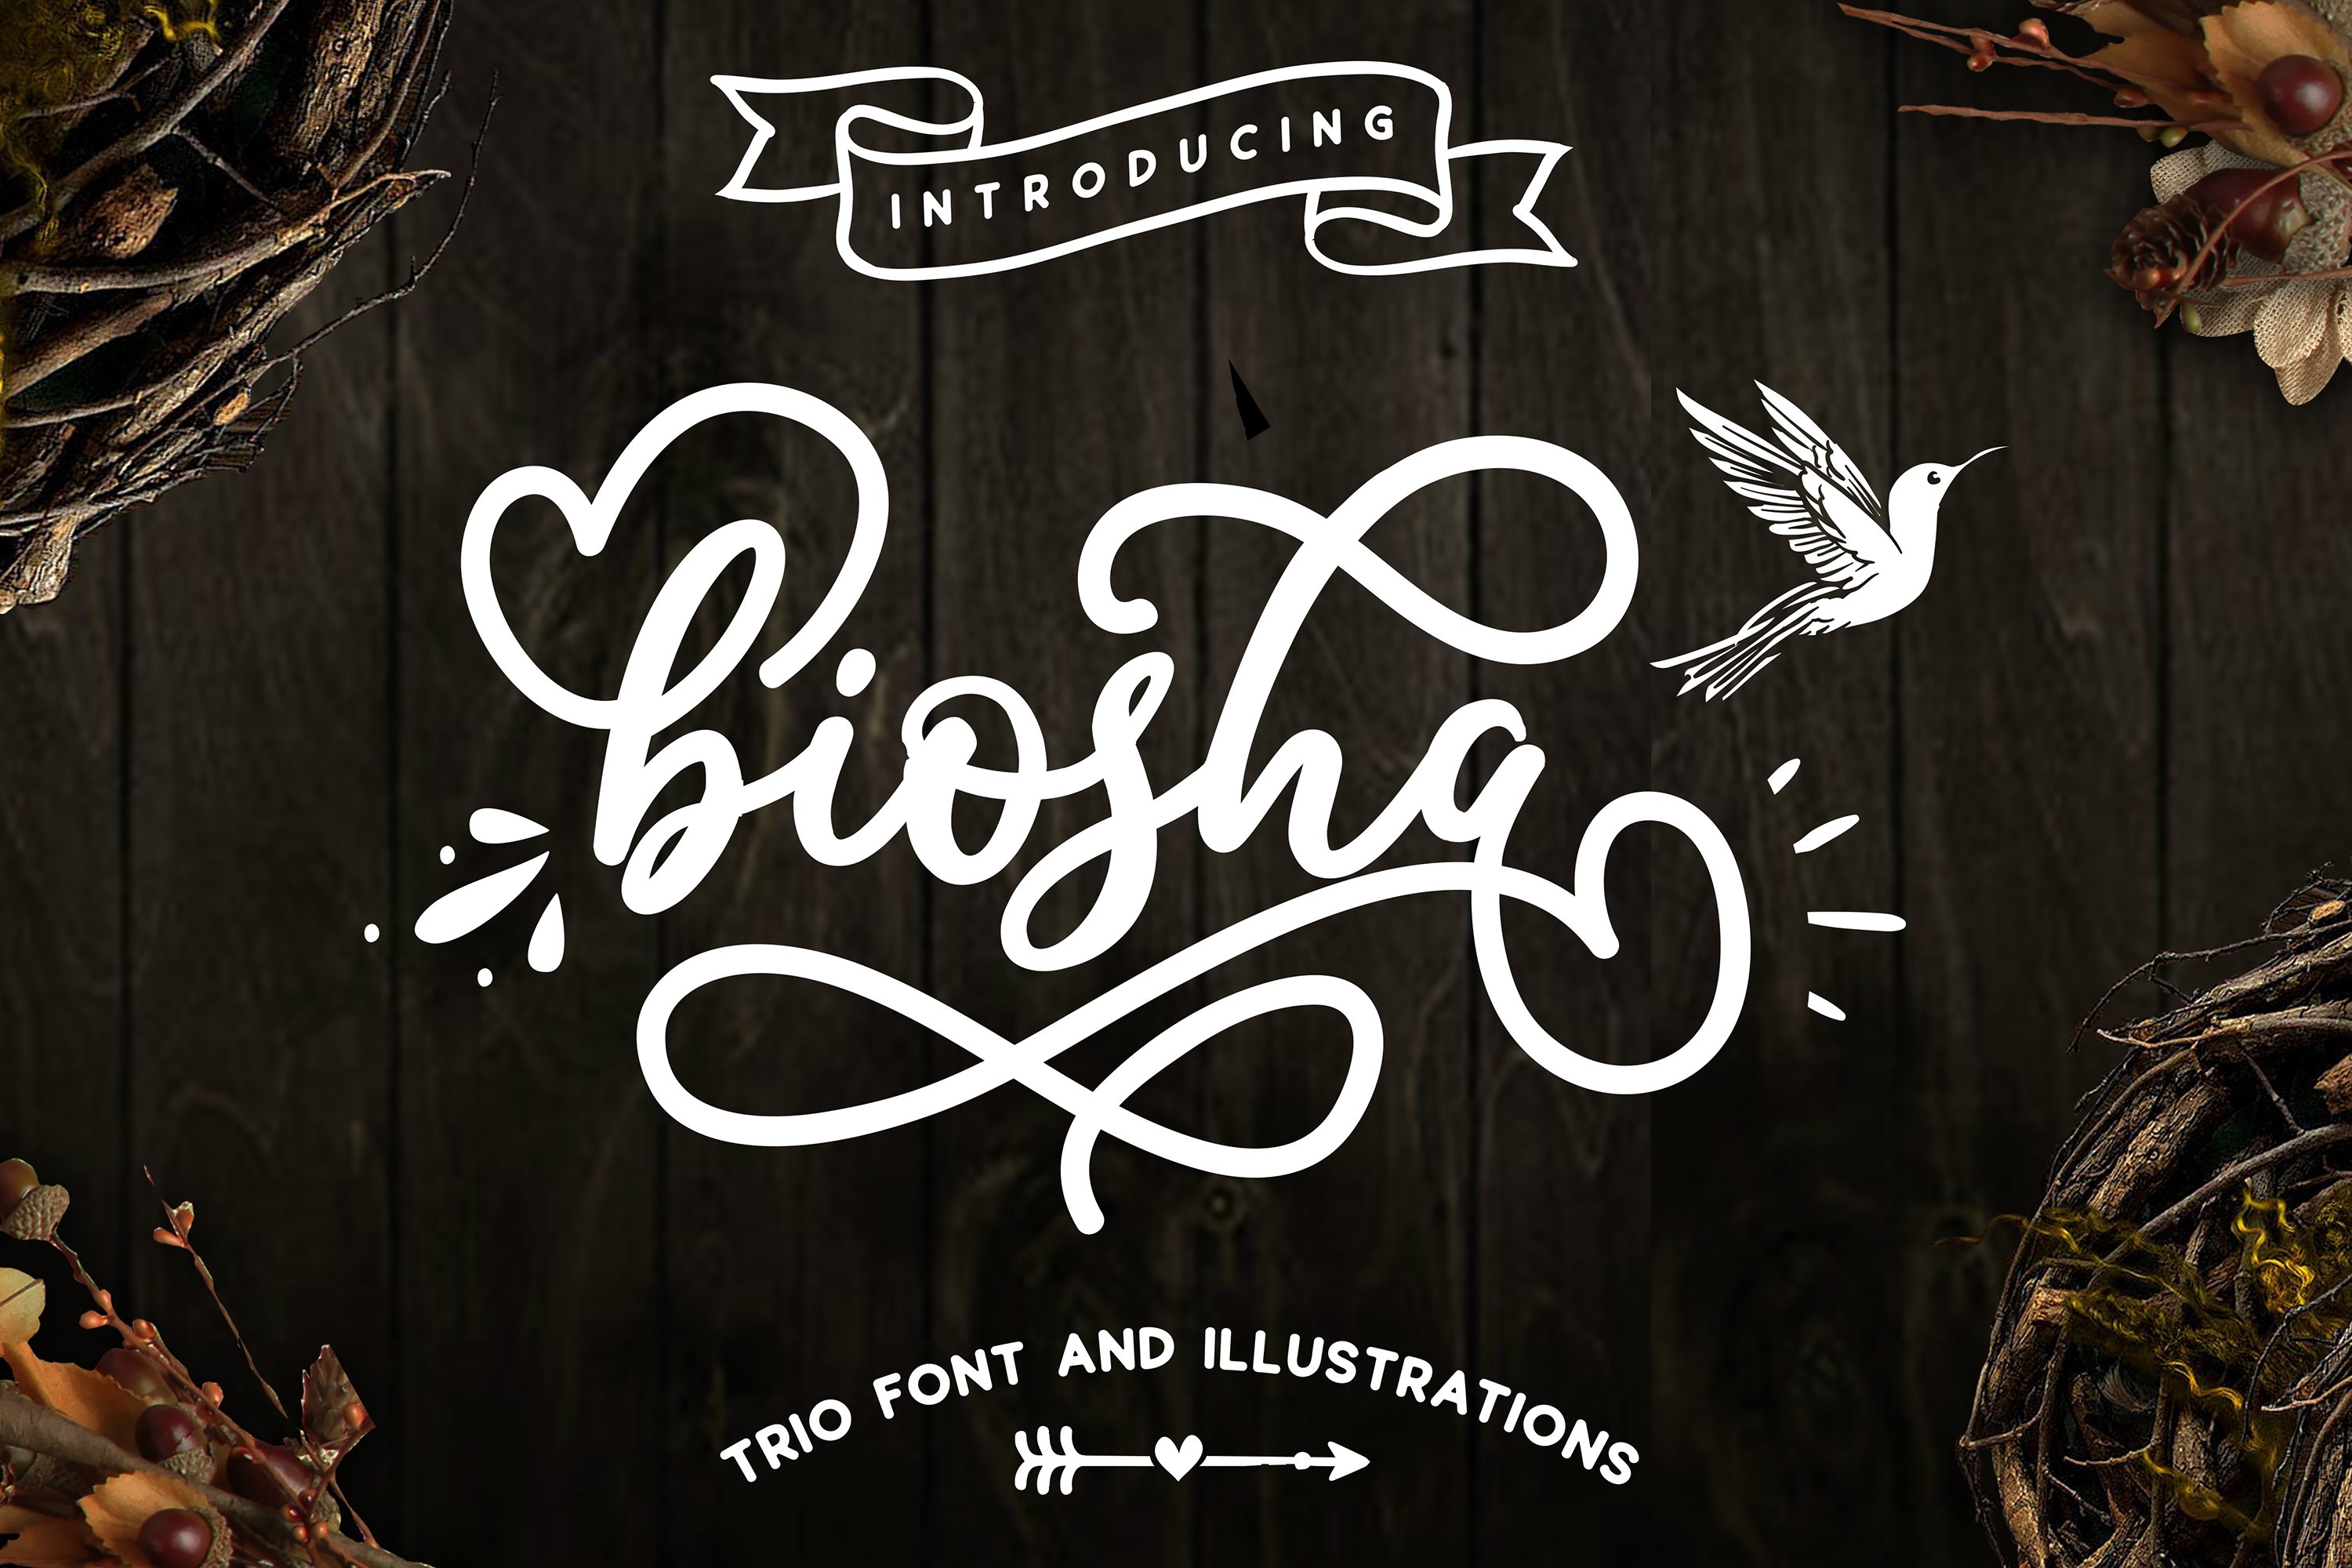 Biosha Font trio and extras cover image.